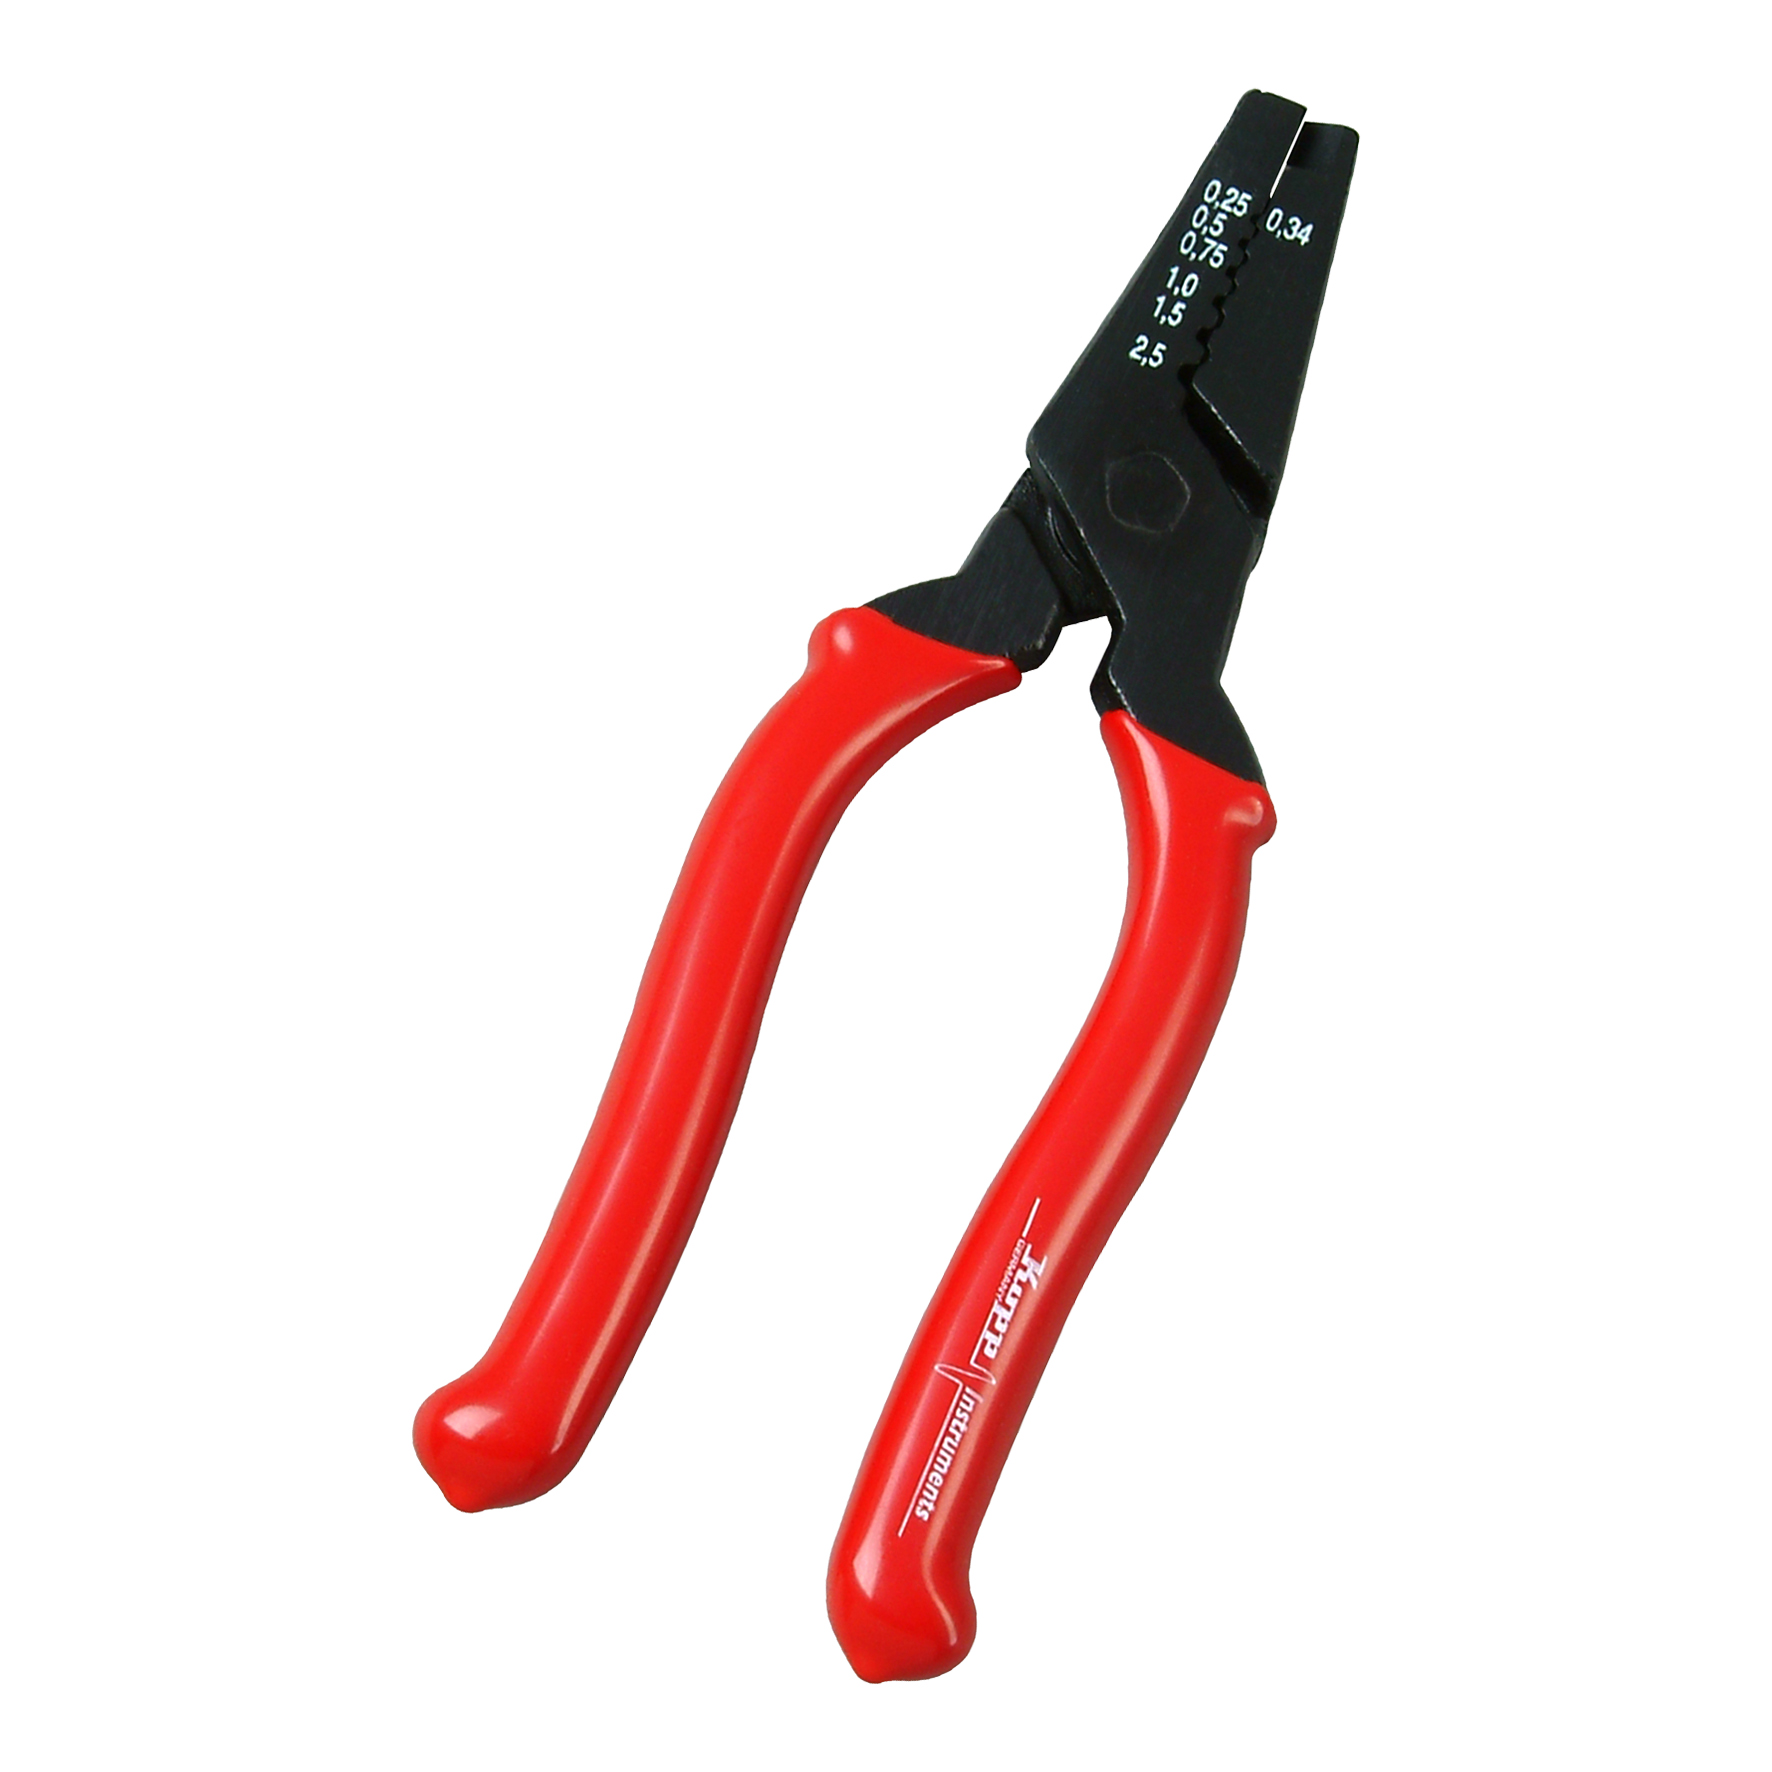 Kopp 324801088 Crimping Pliers 0.5-2.5mm2 Black/Red